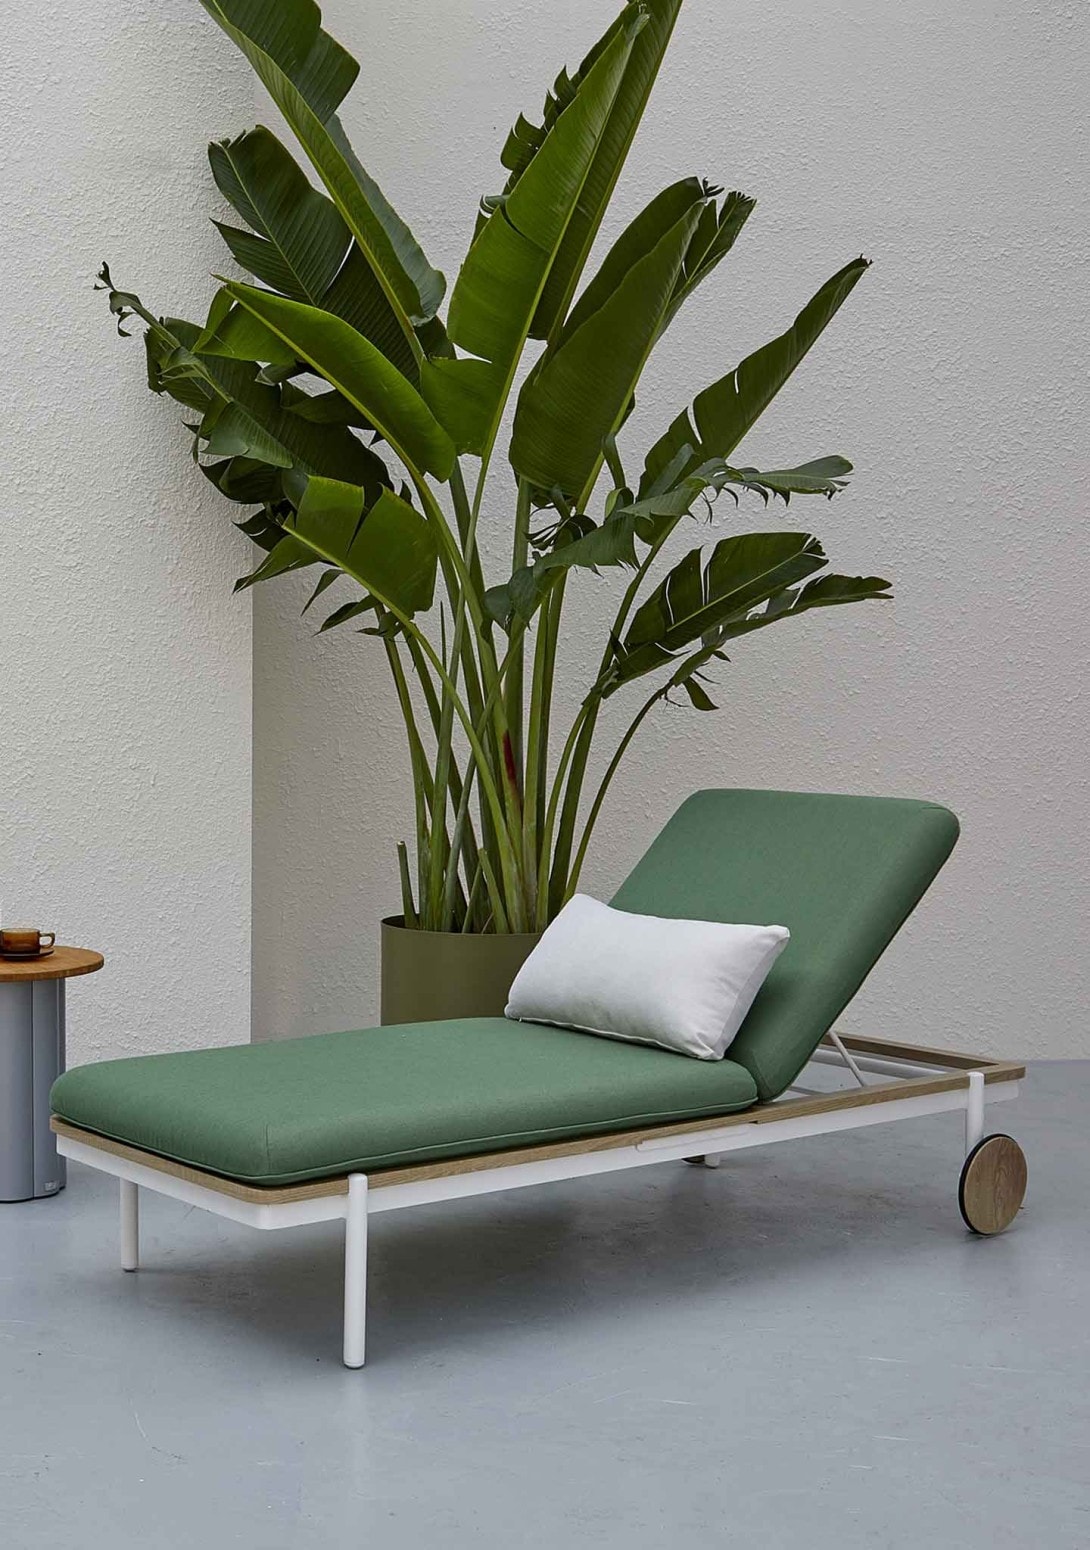 Contemporary Green Upholstered Outdoor Sunlounger Pillow Kun Design